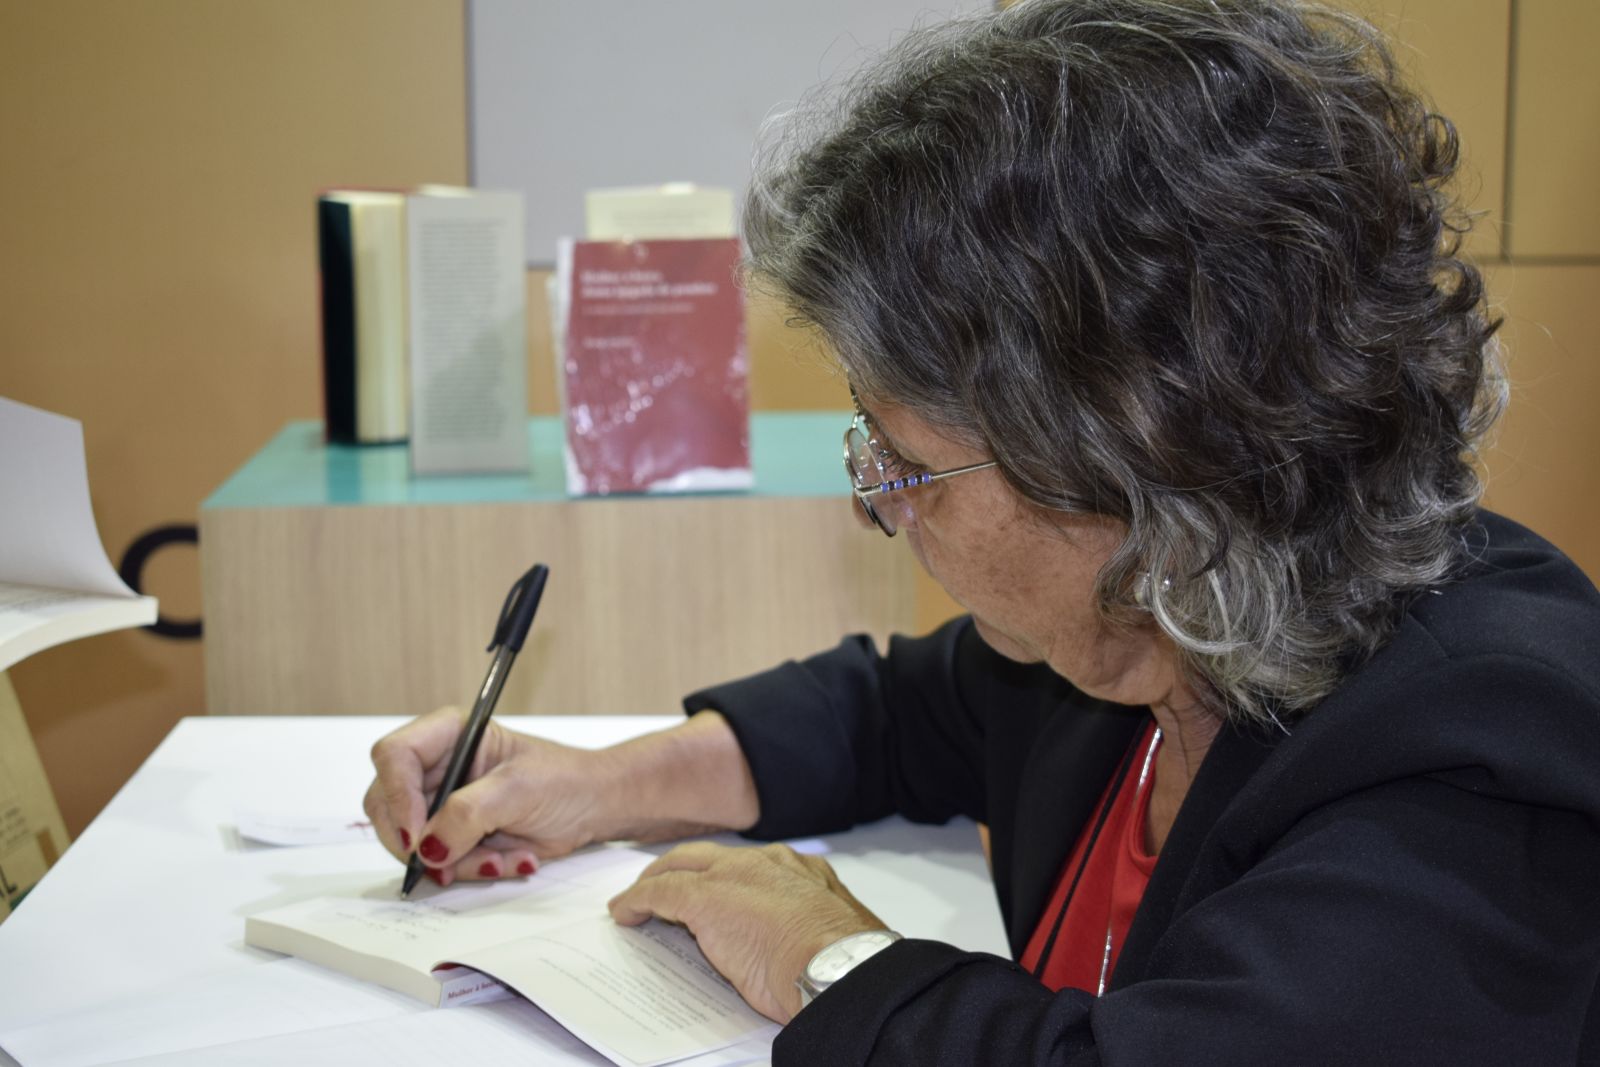 Escritora Maria Jorgete autografando seu livro na Bienal - Foto: Beatriz Ayumi/Arquivo pessoal